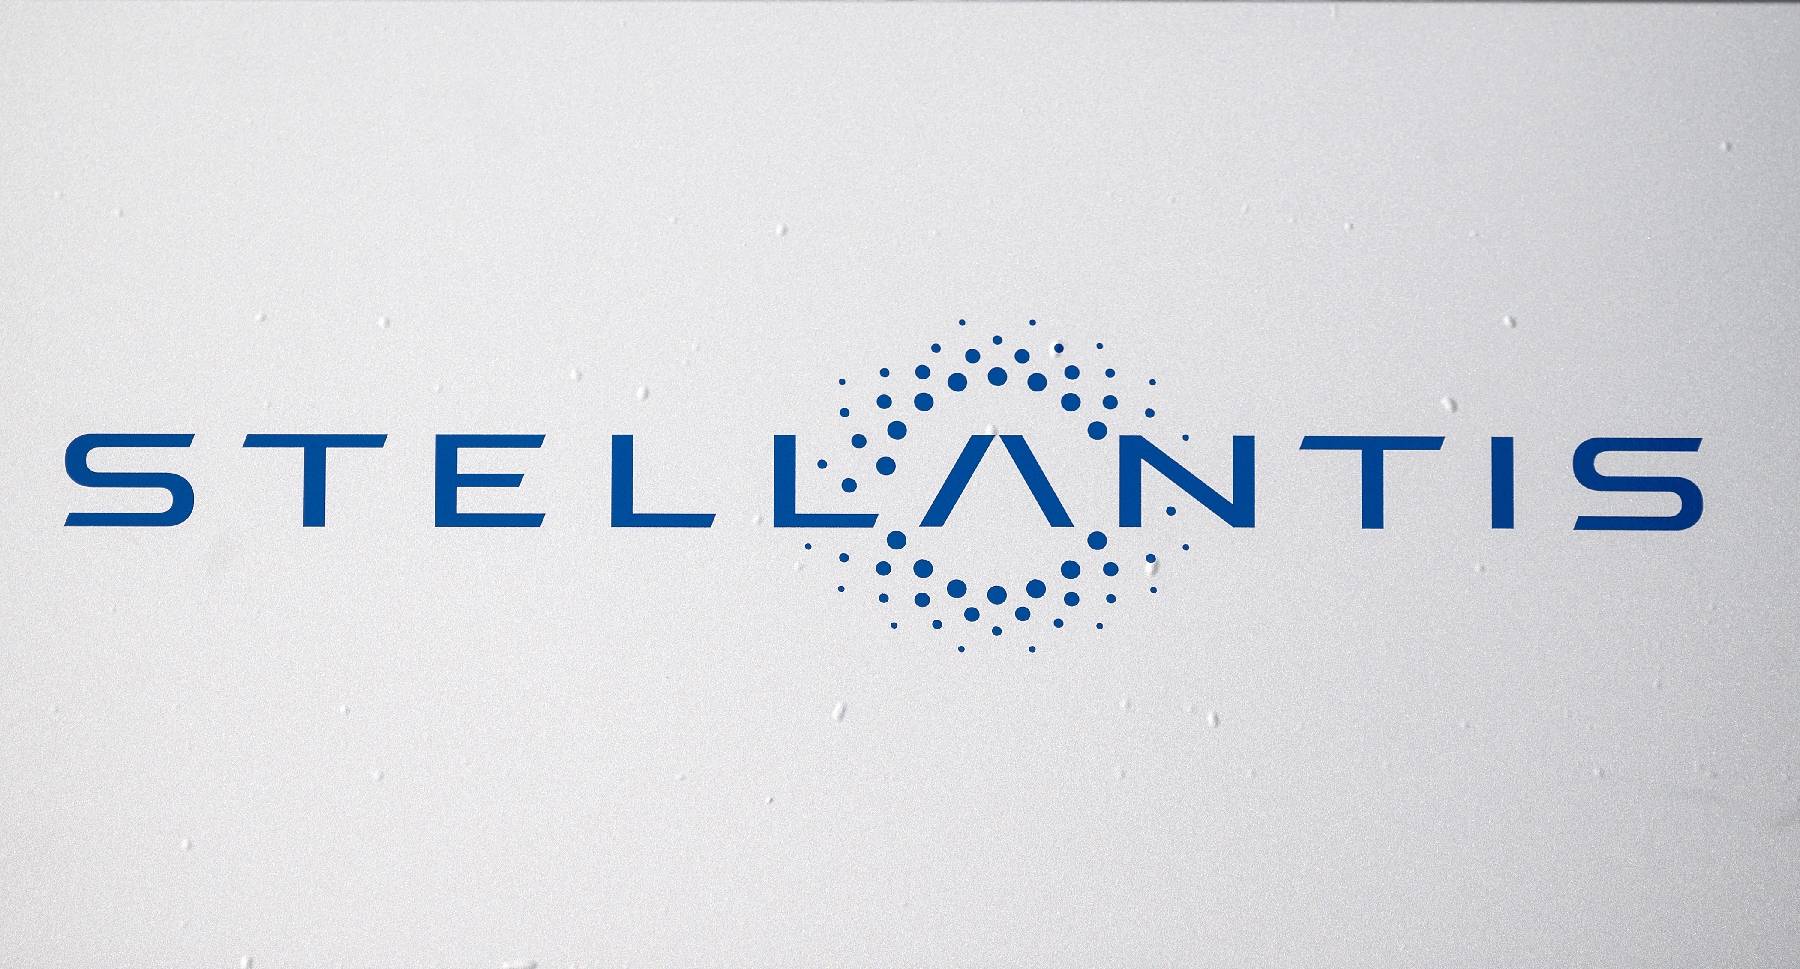 Stellantis enregistre un nouveau bénéfice record de 16,8 milliards d'euros pour 2022